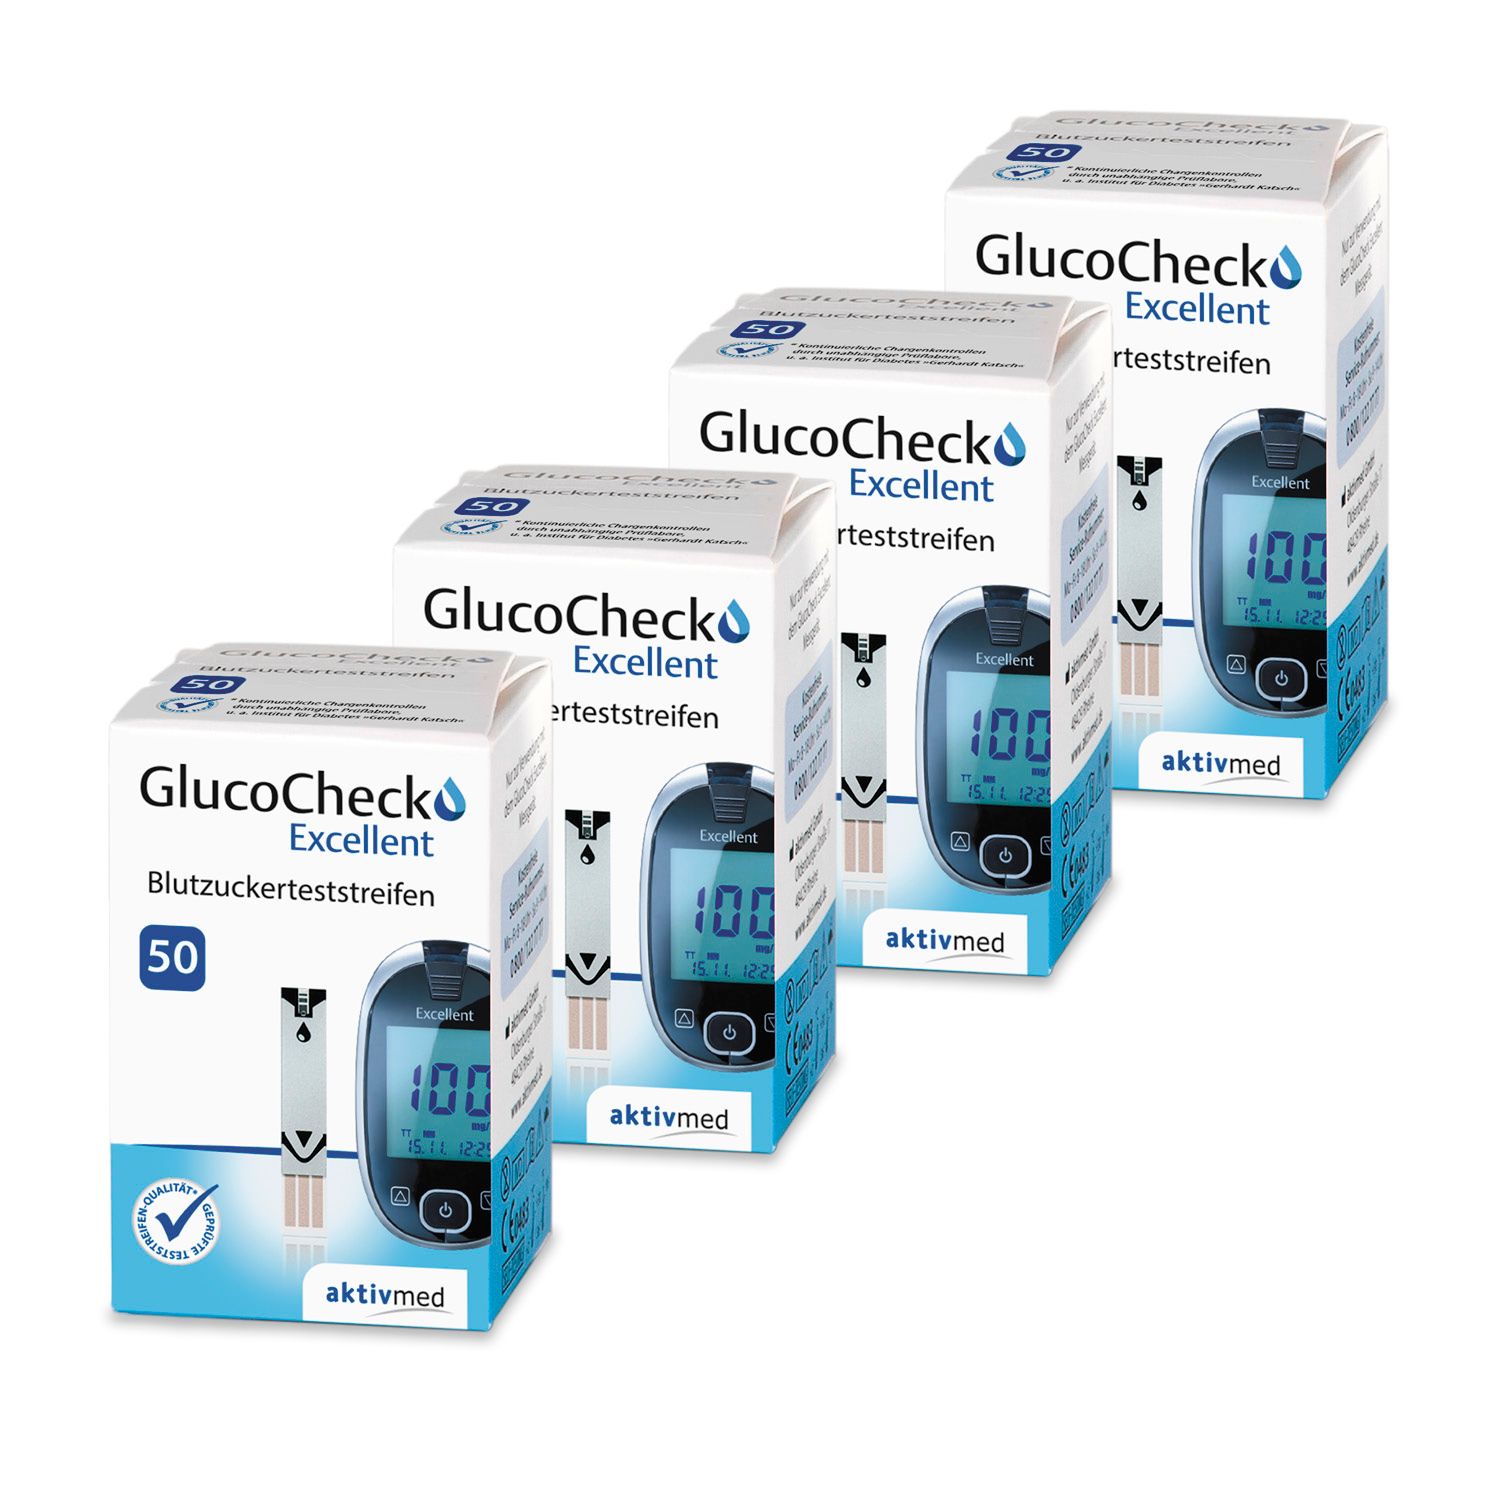 Glucocheck excellent test strip (200 pieces) for diabetes control